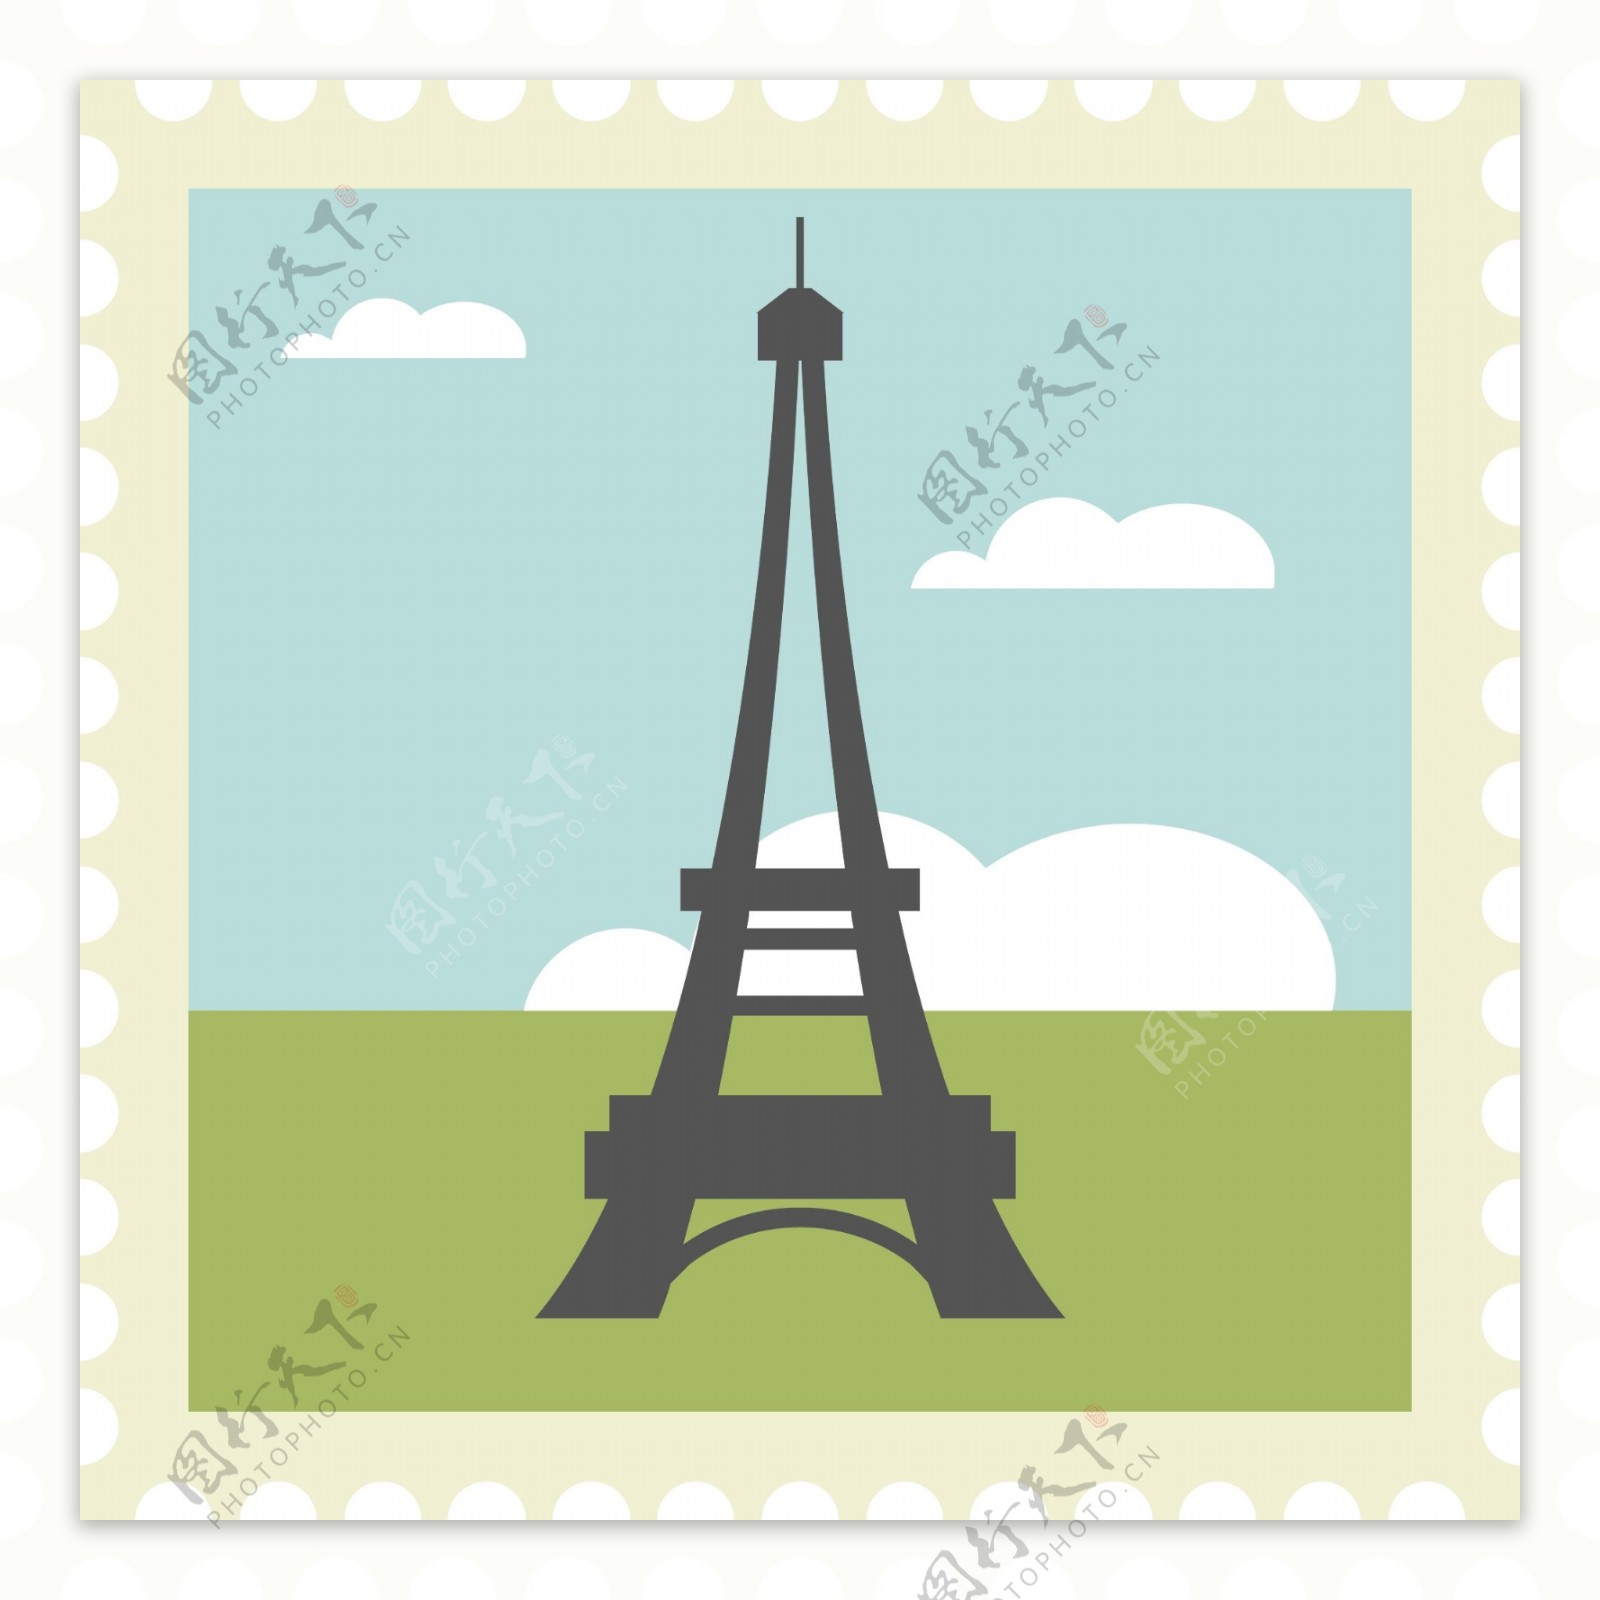 巴黎铁塔邮票